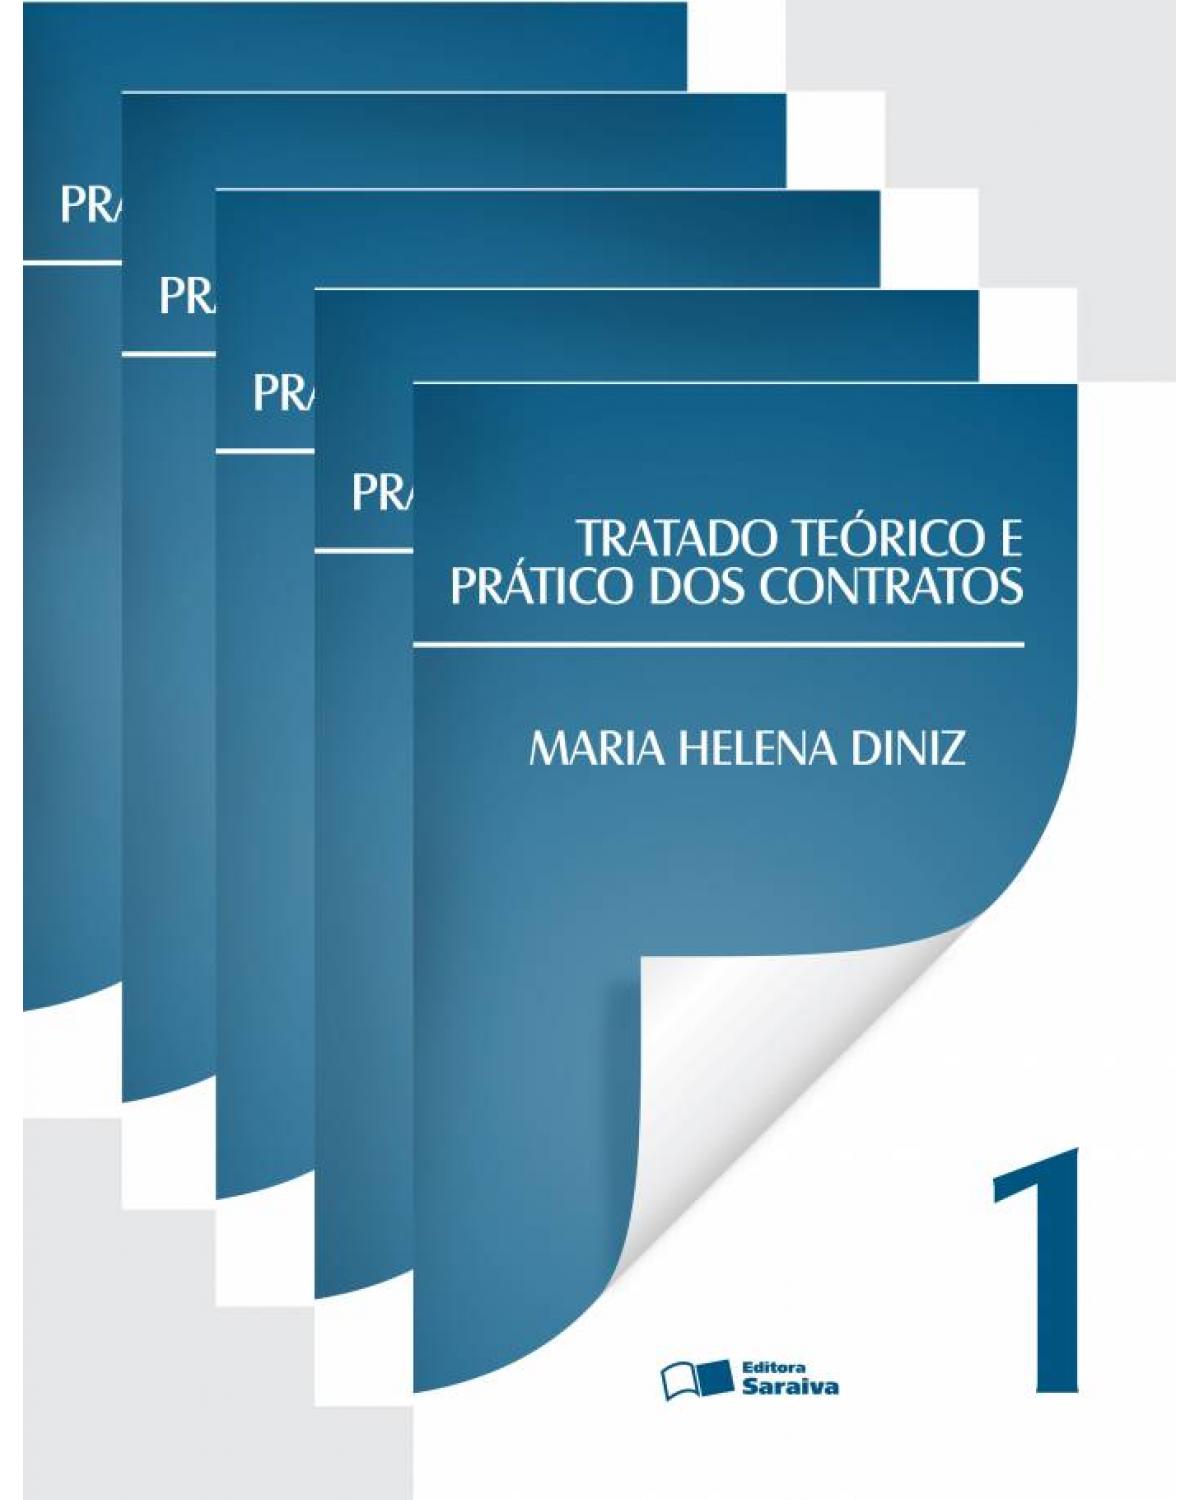 Tratado teórico e prático dos contratos - Volume 1: (arts. 378-538) parte especial - procedimento traum e cumprimento prático sentença - 7ª Edição | 2013